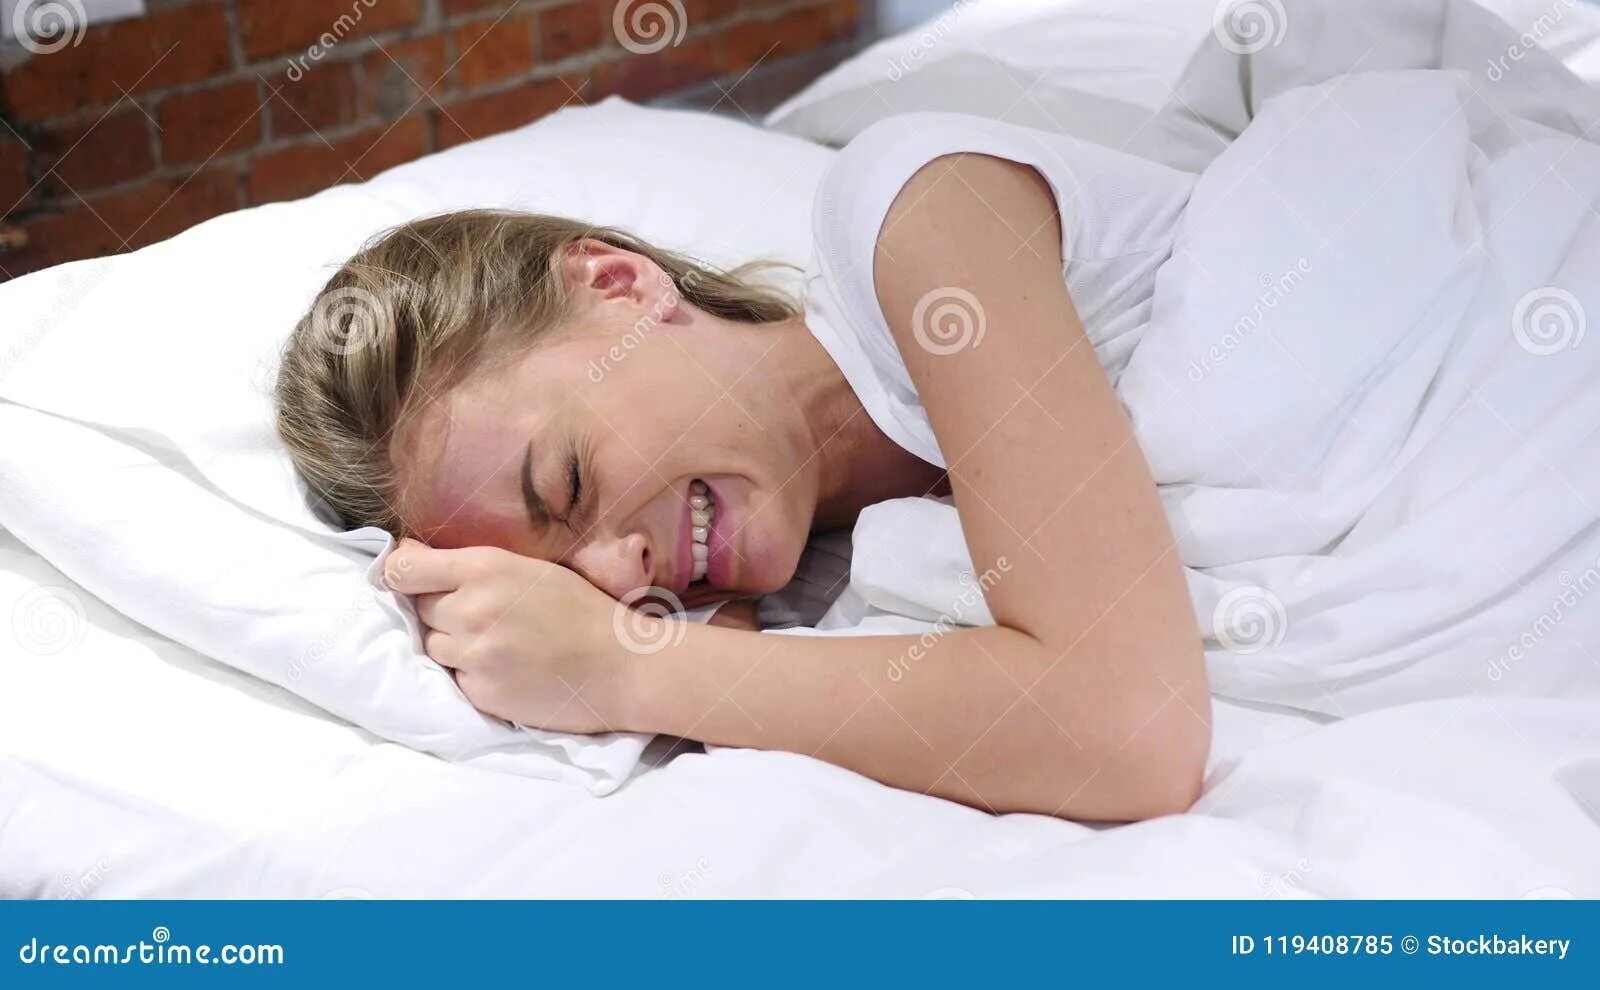 Плач в подушку. Женщина лежит в постели. Плачет в подушку.